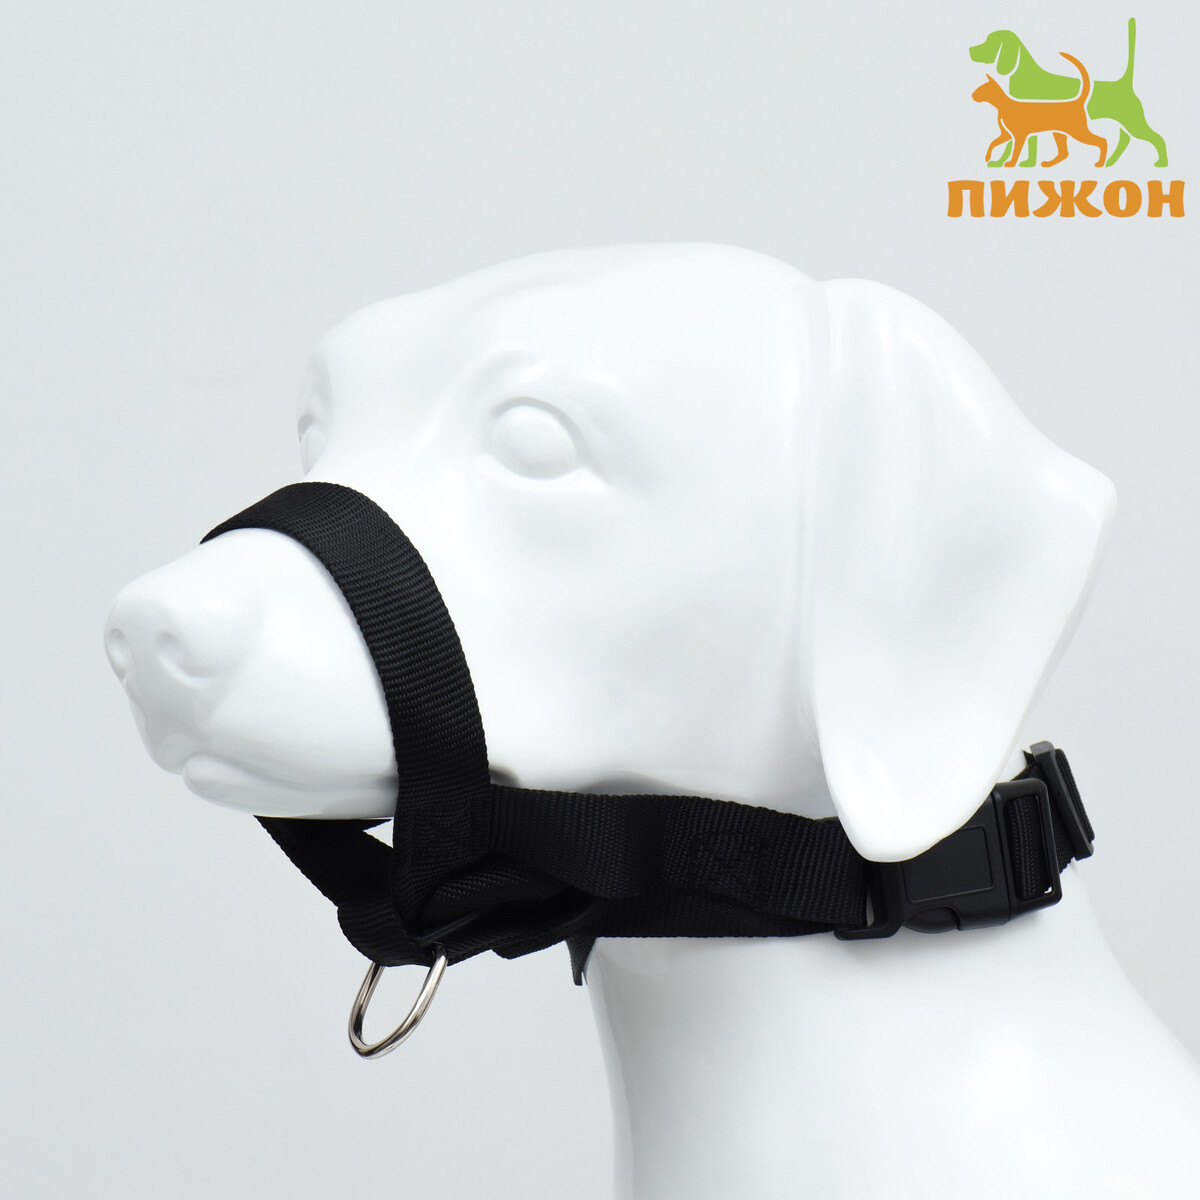 Недоуздок-намордник для собак строгий, размер l, ом 18-30 см, ош 16-24 см, черный намордник для собак 5 с трехсторонним ремешком термопластичный каучук